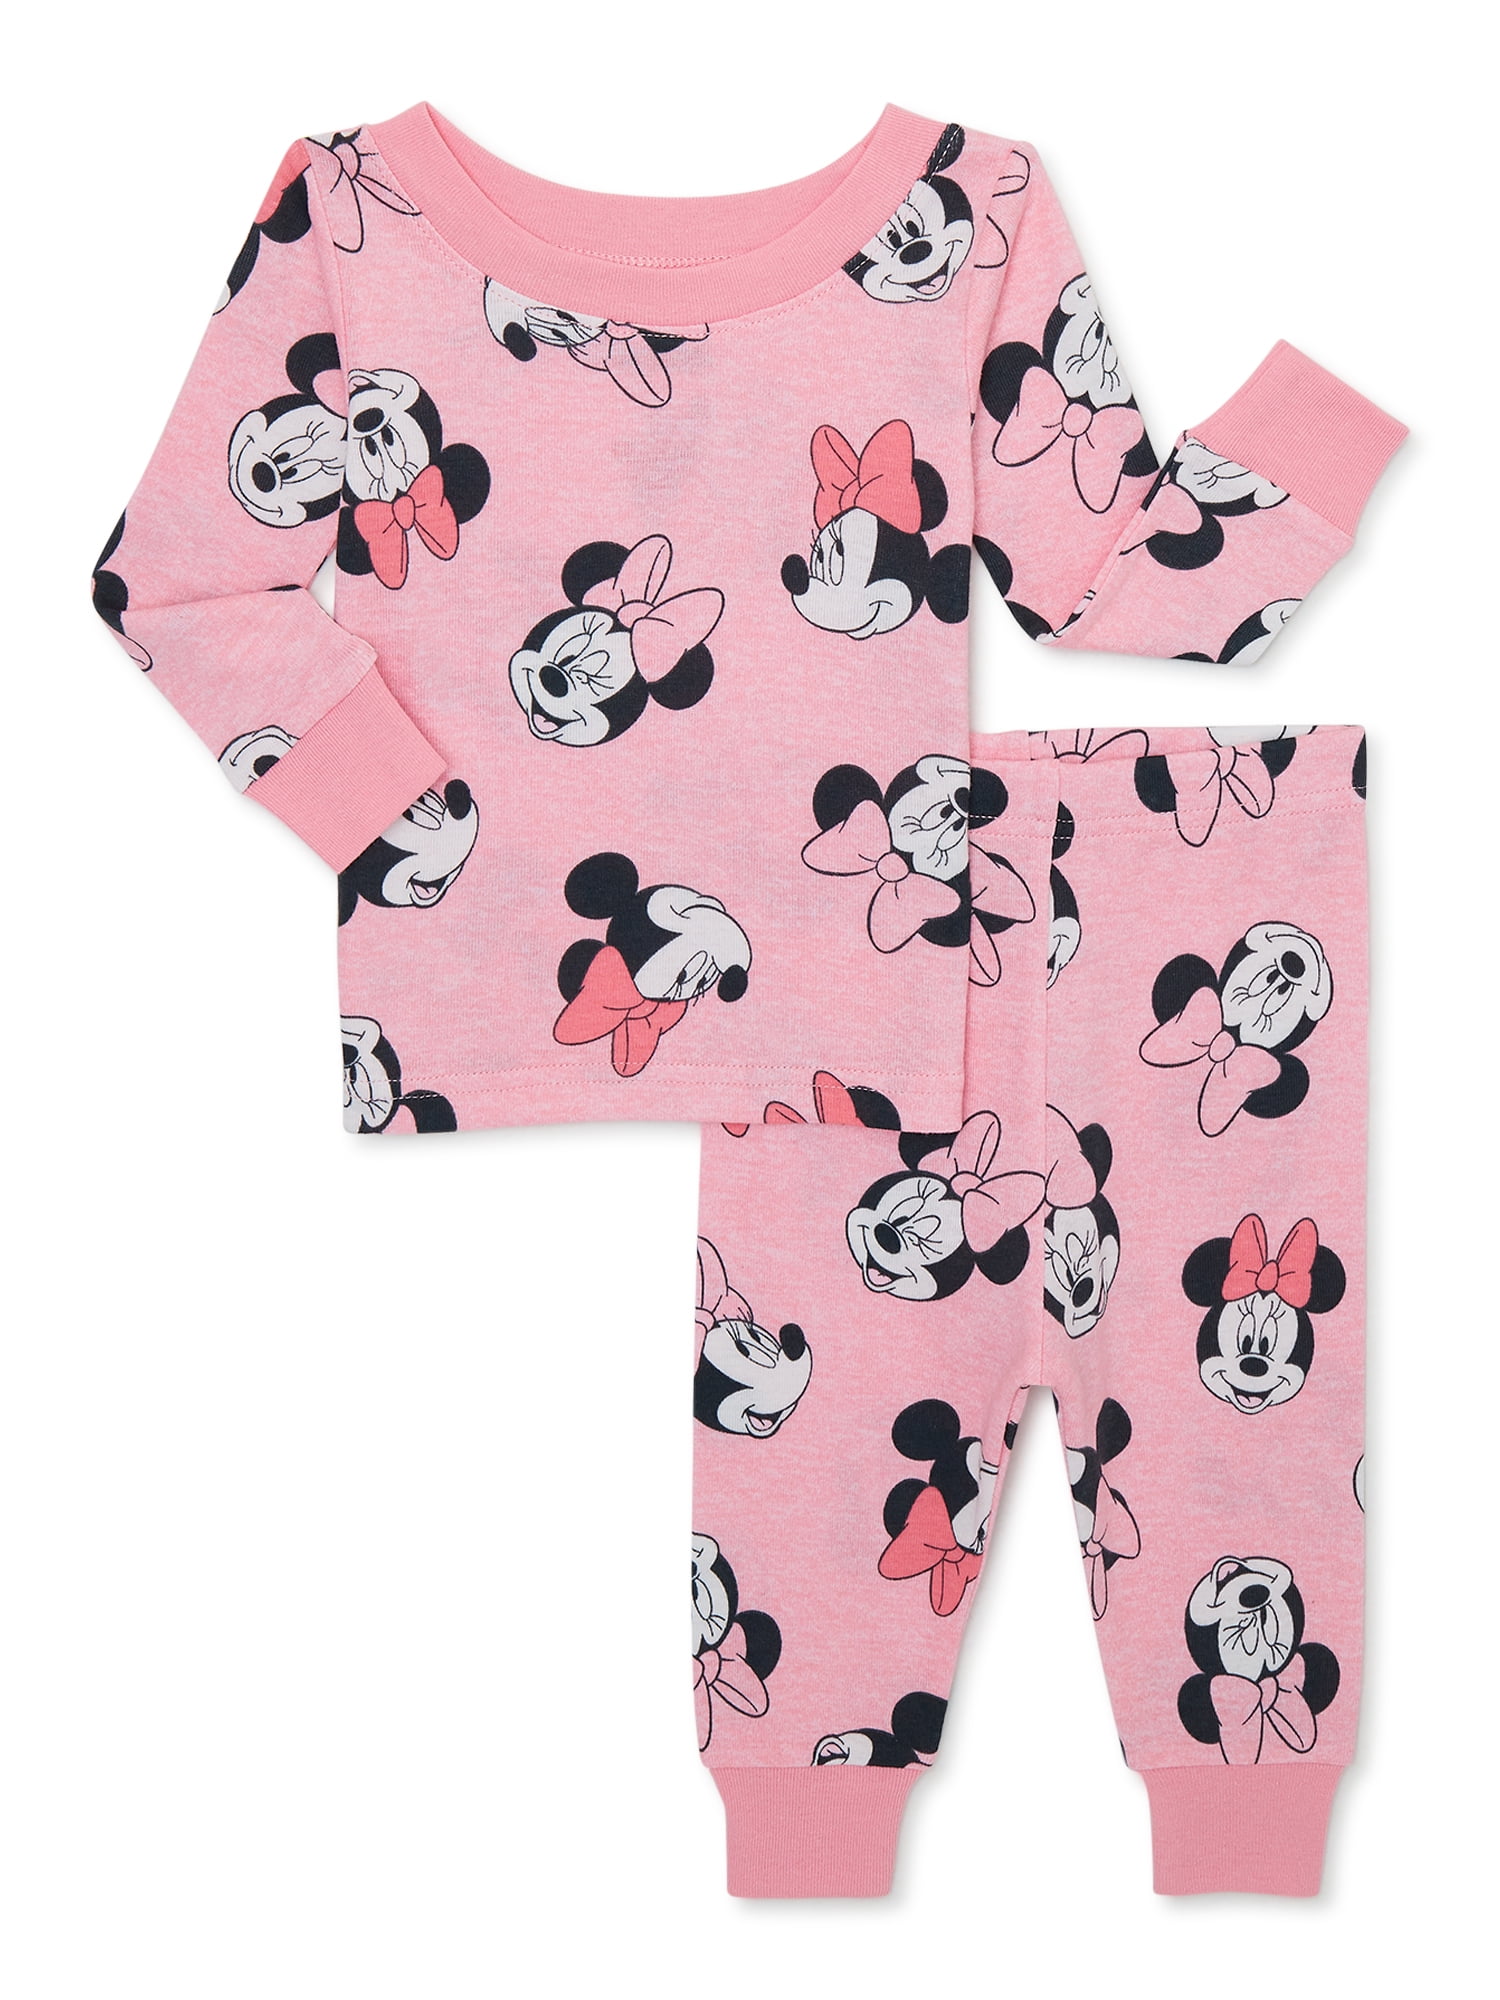 Oordeel Ligatie buiten gebruik Toddler Character Pajamas, 2-Piece, Sizes 12M-5T - Walmart.com